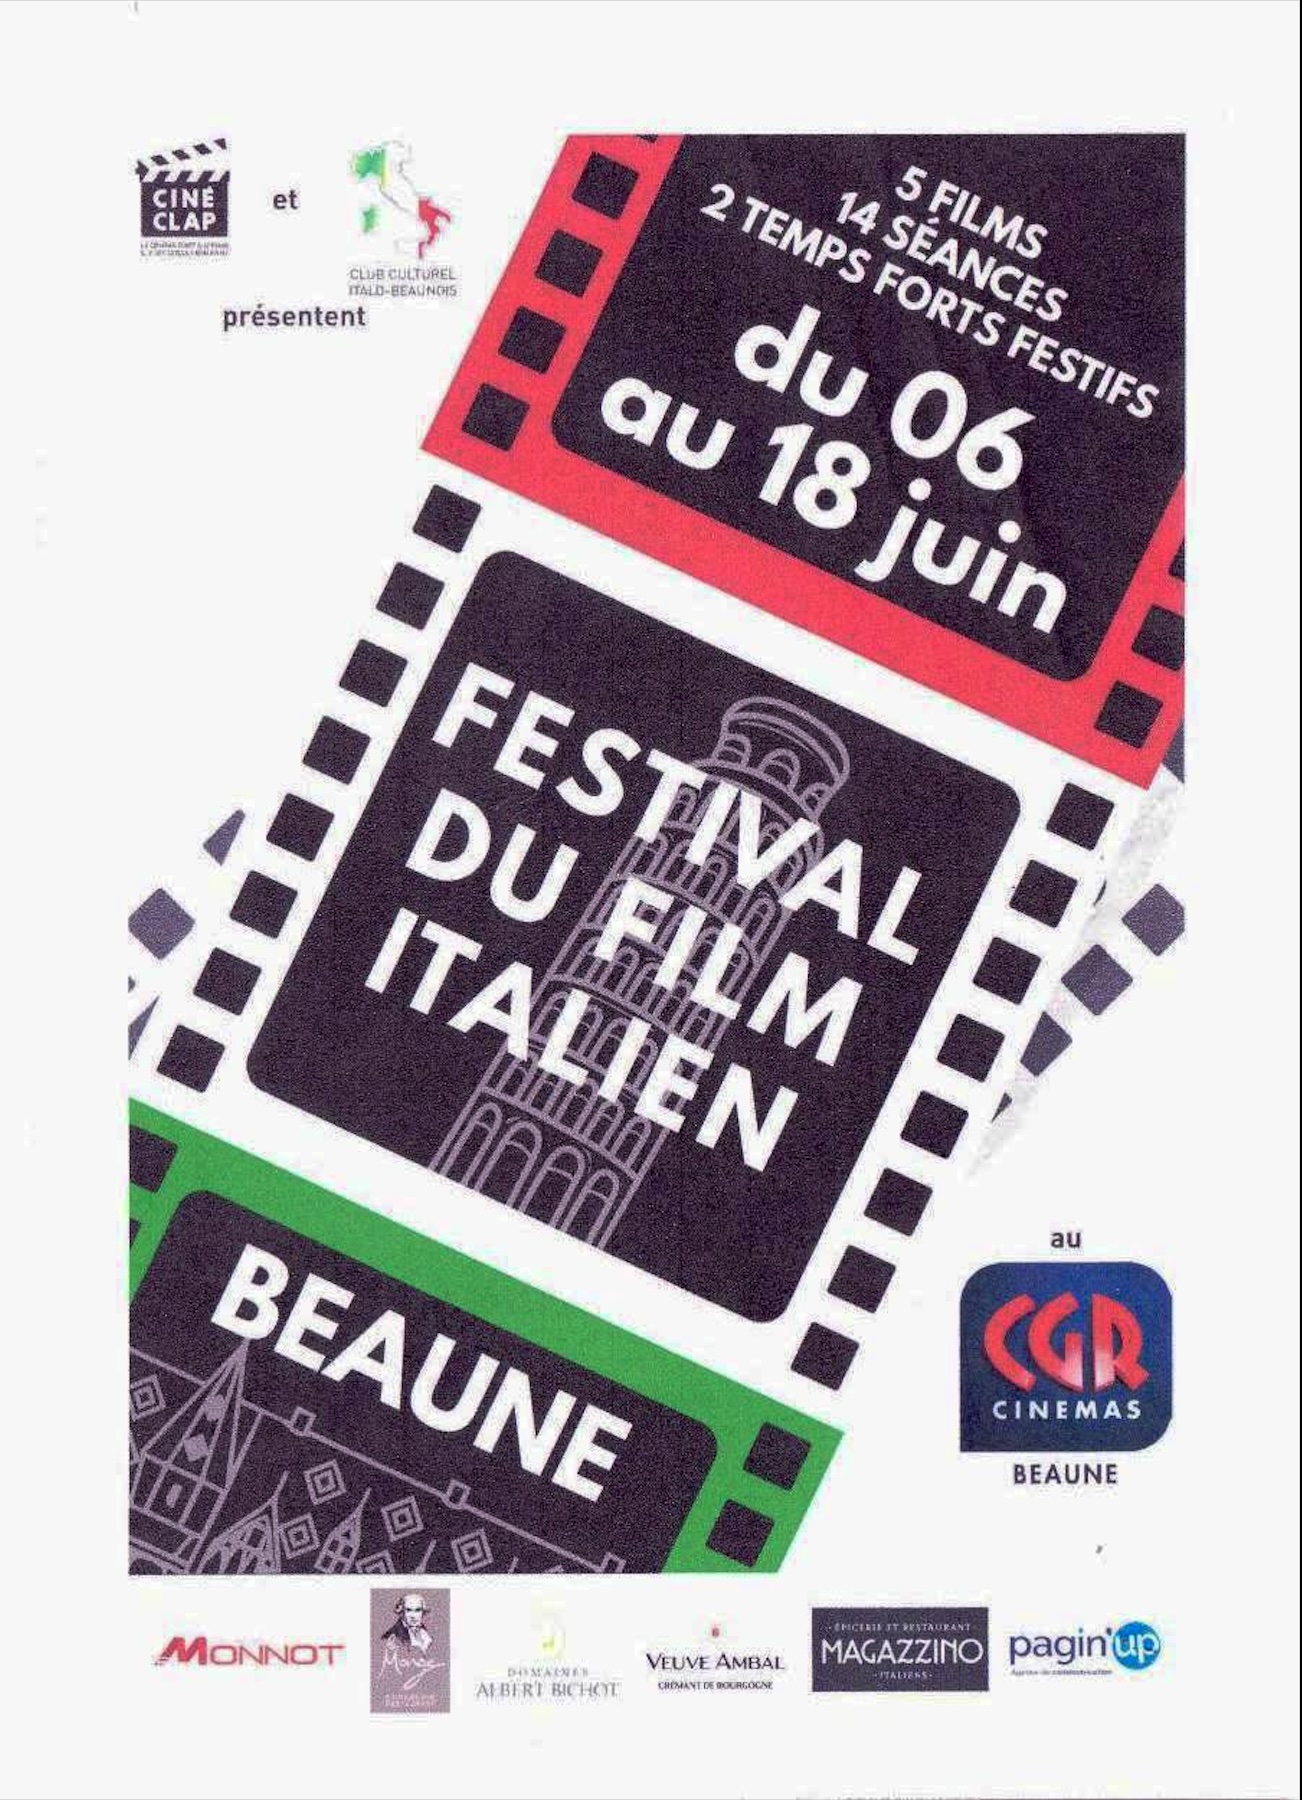 Bonn – Ciné-Clap rilancia il Festival del Cinema Italiano dal 6 al 18 giugno